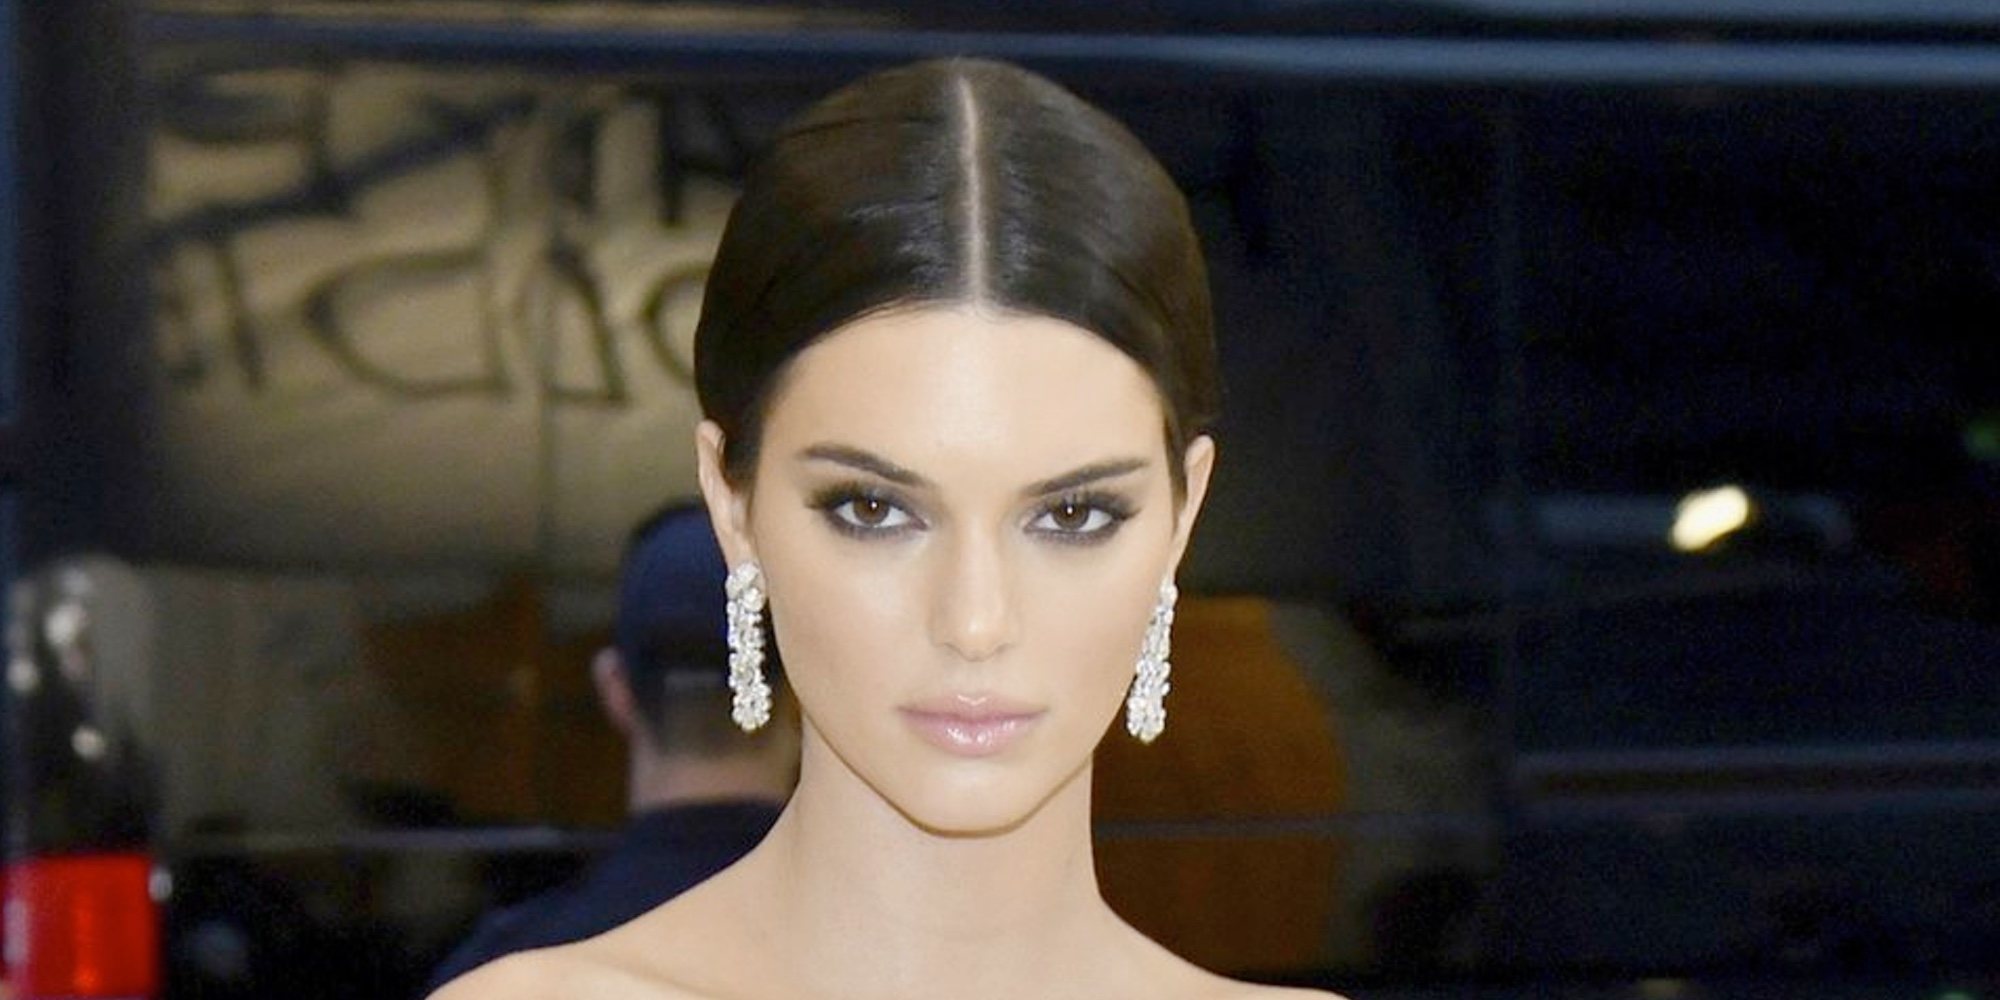 Detenido el acosador de Kendall Jenner que se había colado dos veces en su casa: "Se ha evitado una tragedia"